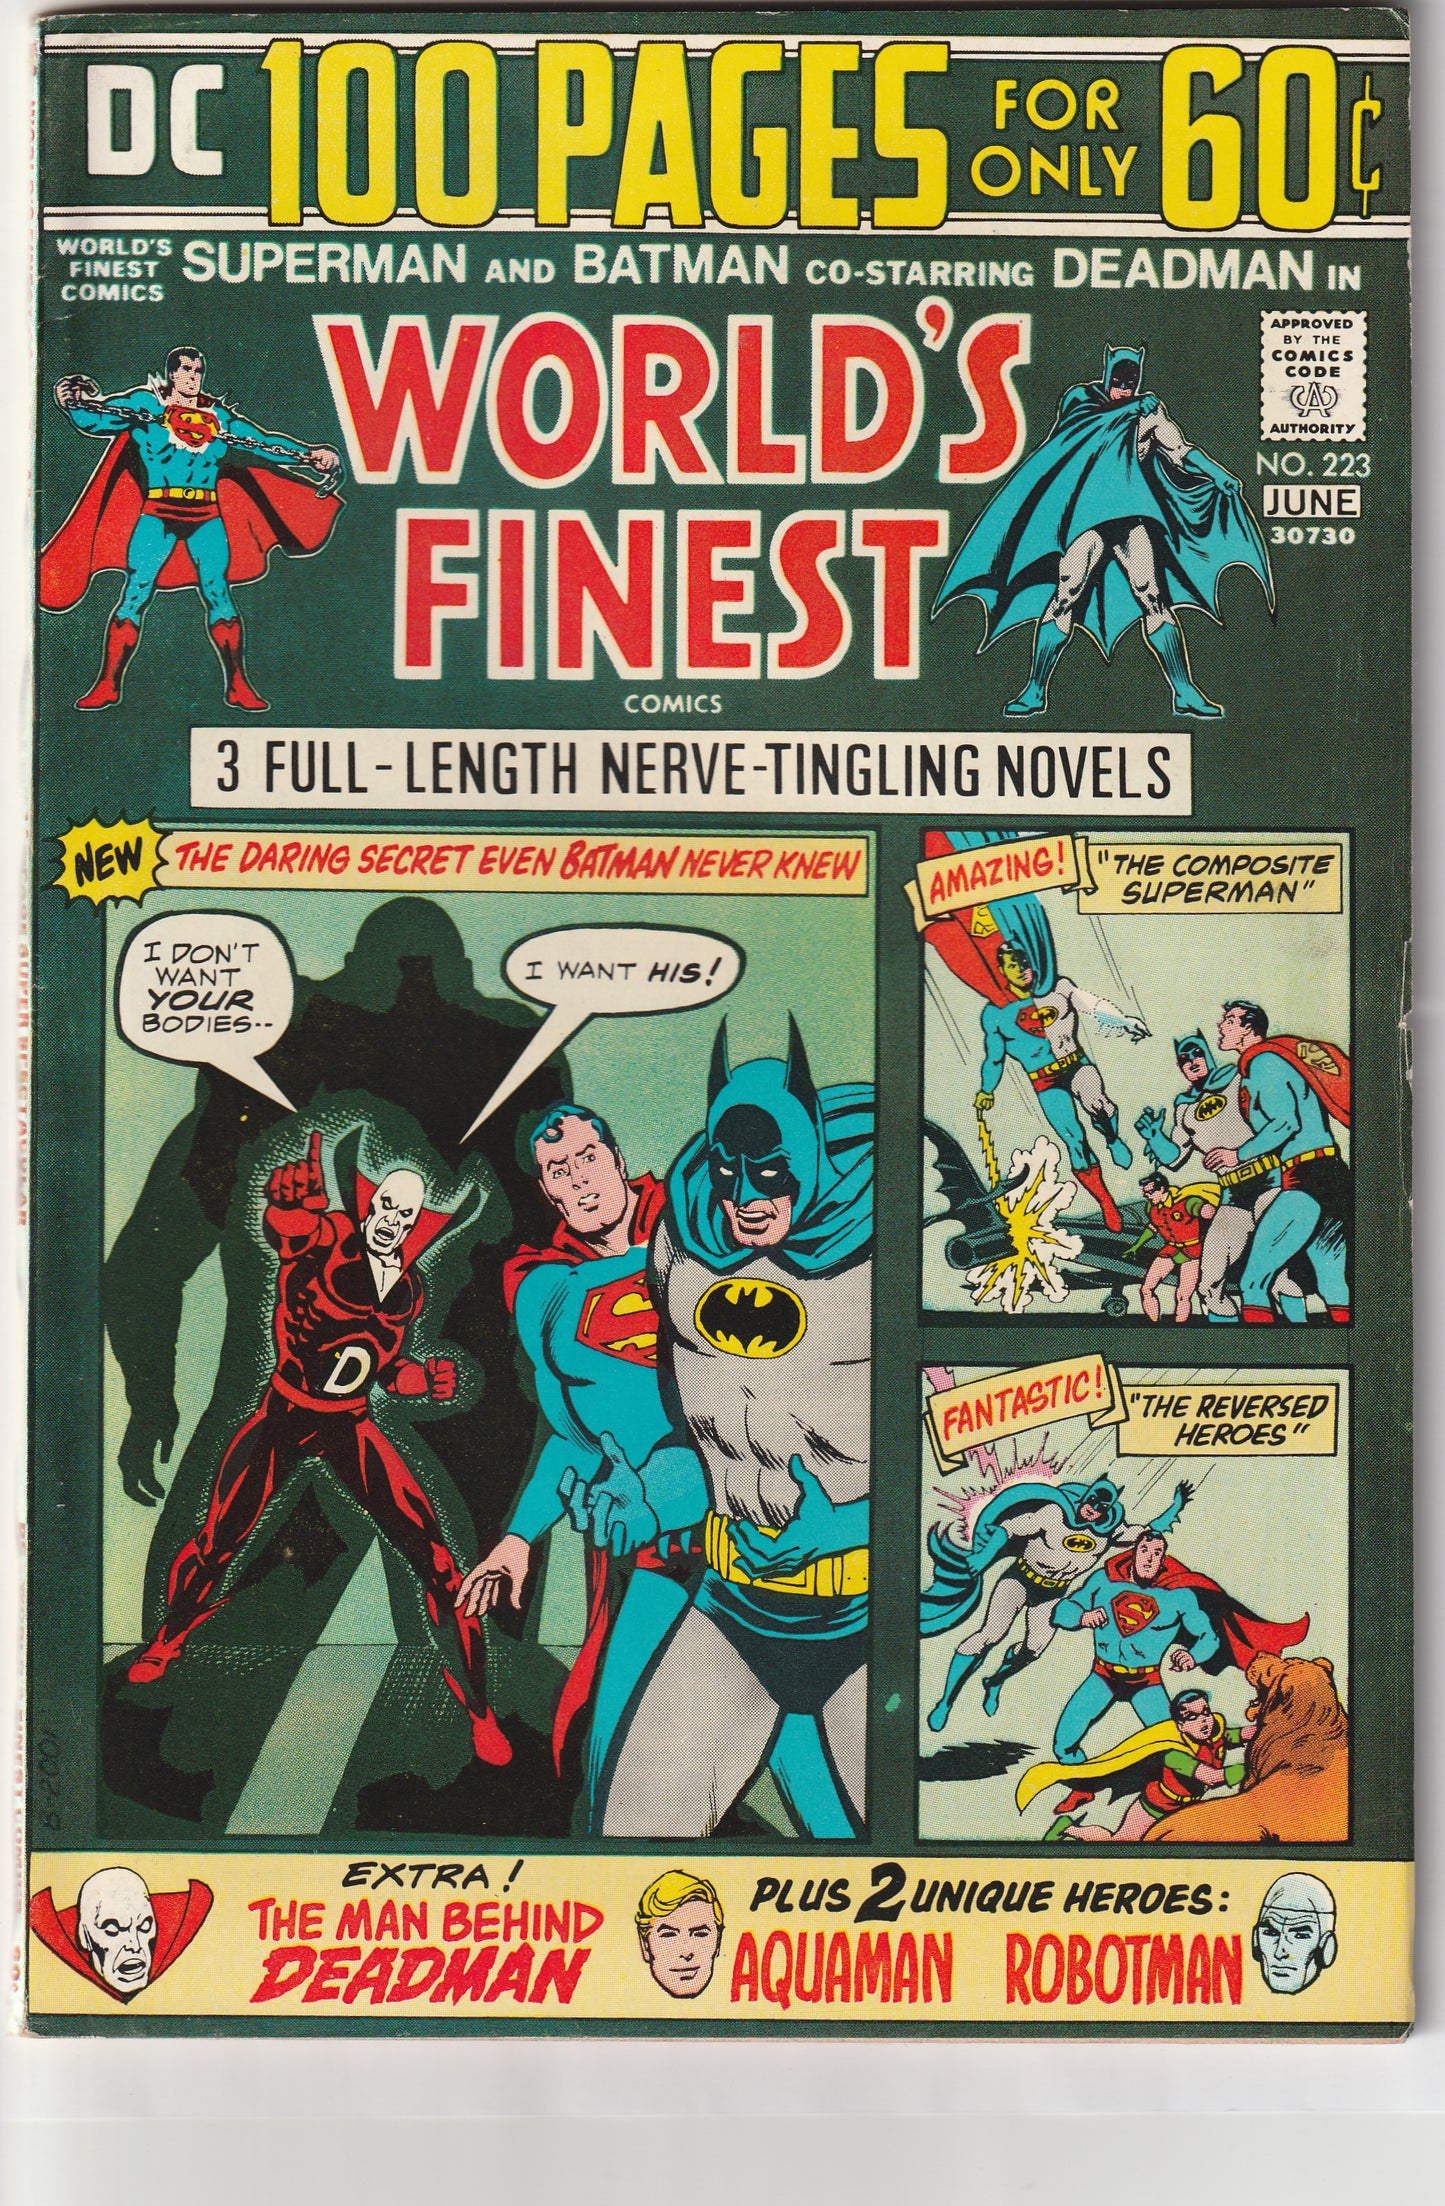 World's Finest #223 (1974) - 100 Pages, Deadman Origin, Neal Adams reprint